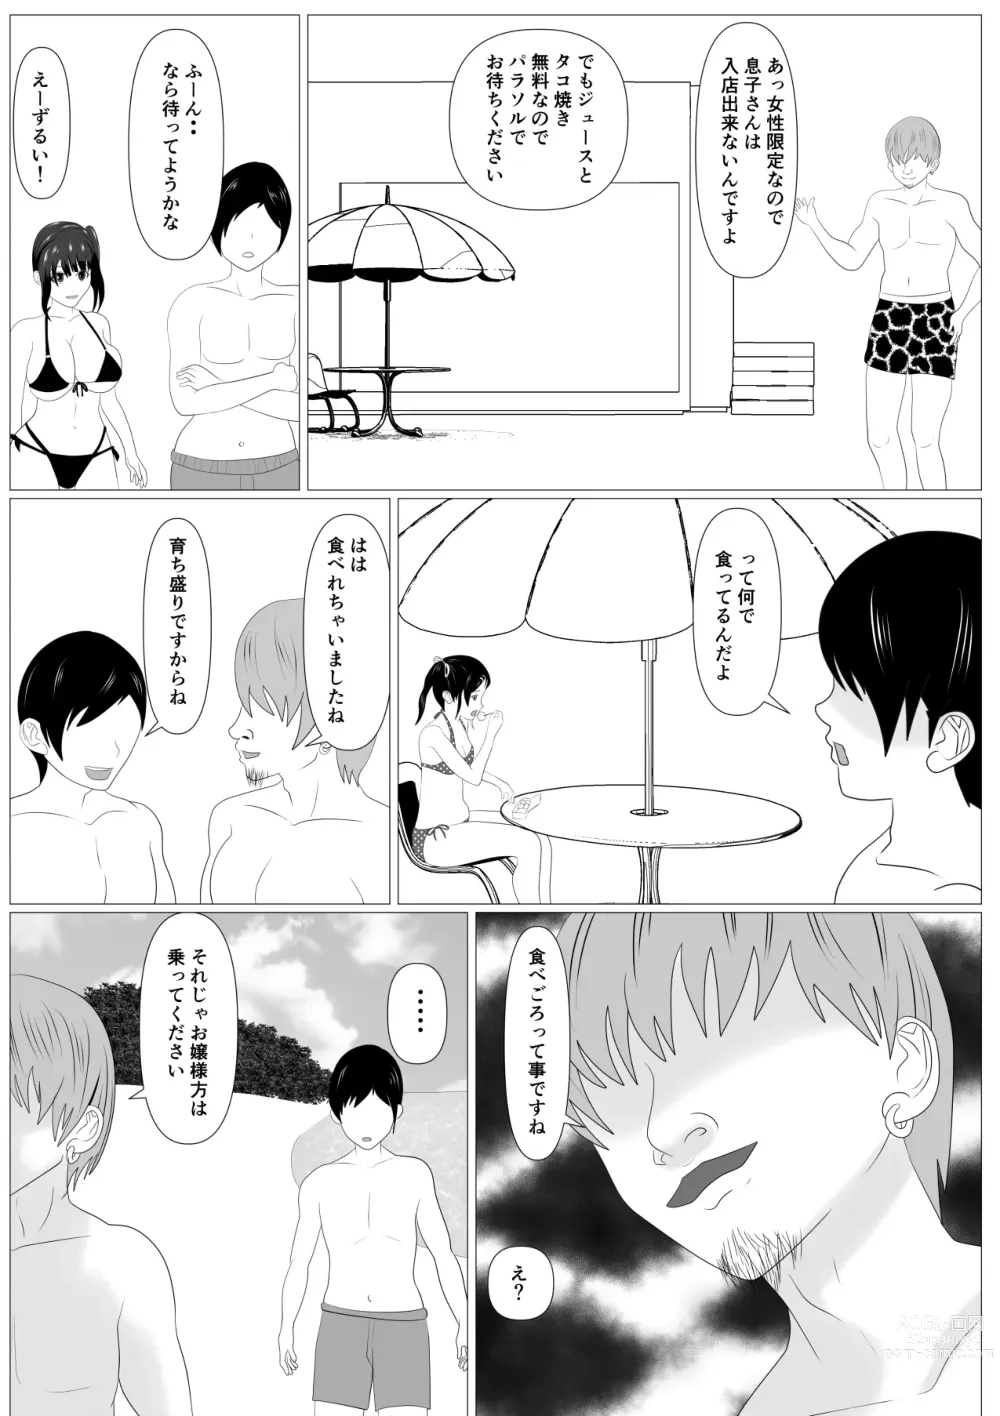 Page 15 of doujinshi Kazoku Torare